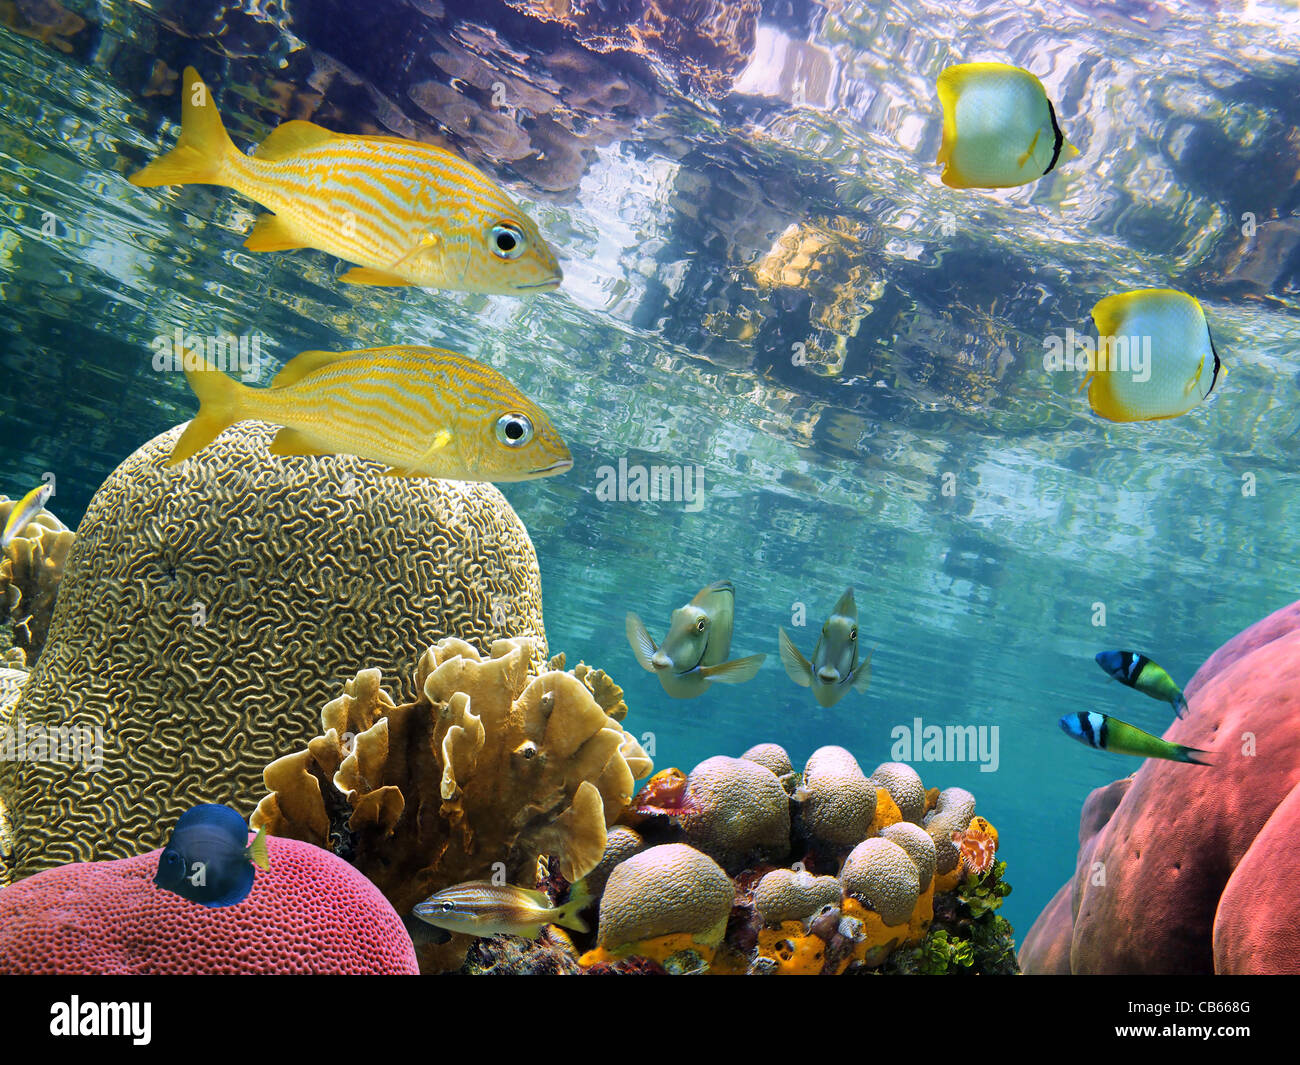 Unter dem Spiegel liegt Oberfläche eine klare Lagune ein blühenden Korallen Garten mit bunten tropischen Fischen Stockfoto